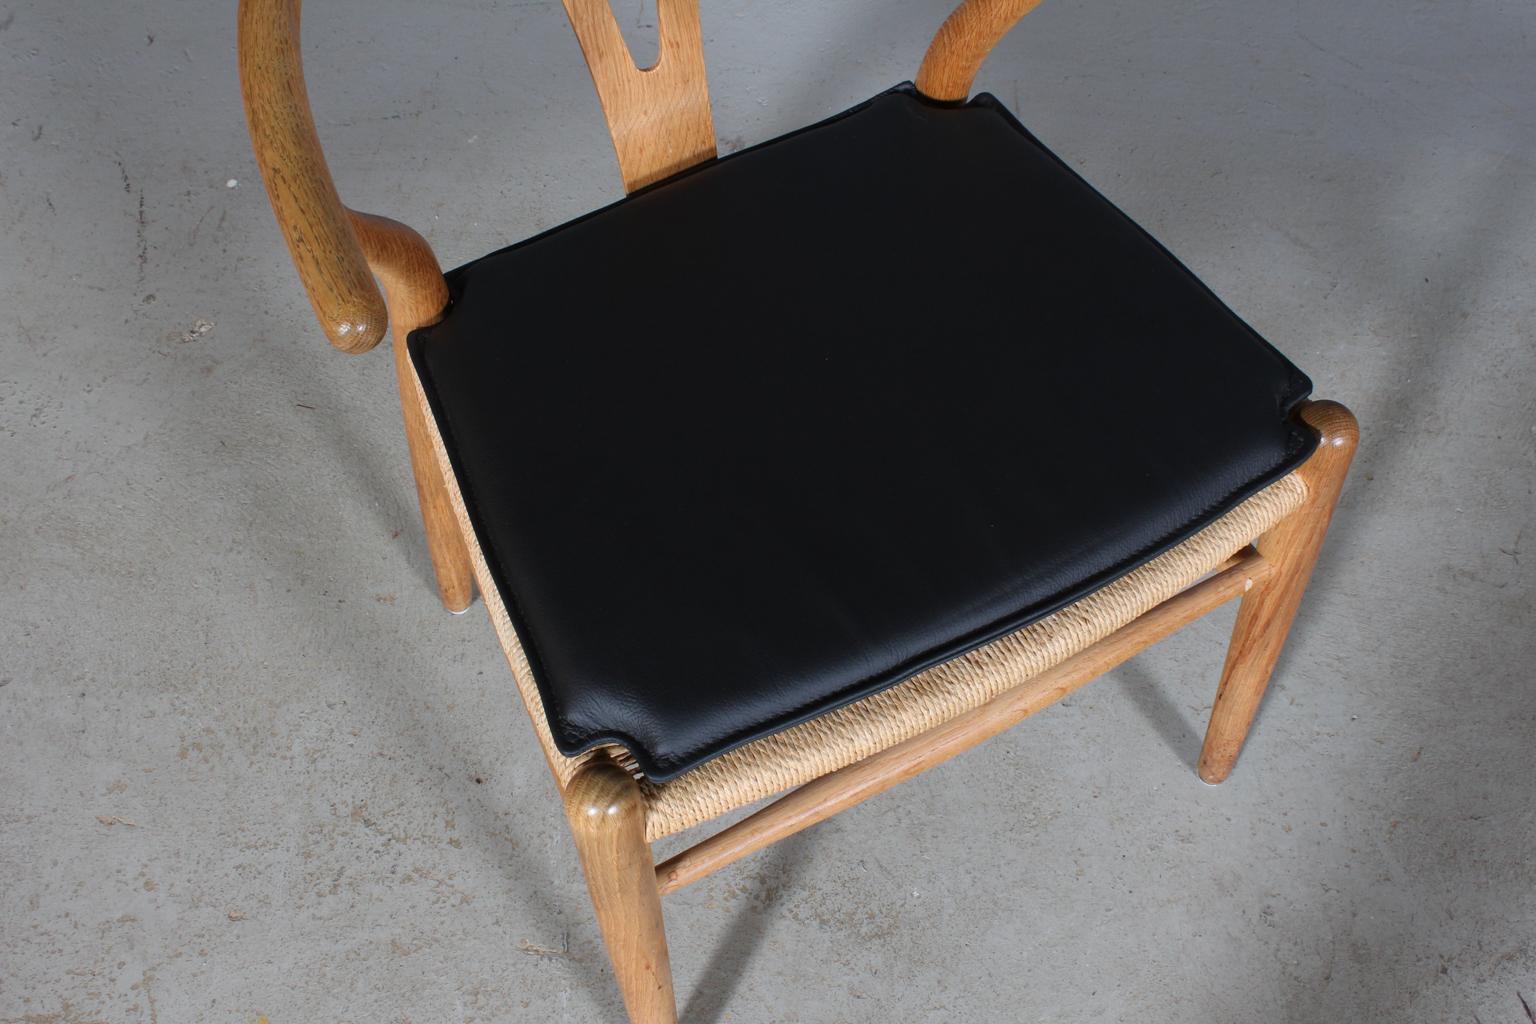 Hans J. Wegner Kissen für Querlenkerstuhl Modell CH24.

Hergestellt aus schwarzem Leder und hochwertigem Schaumstoff.

Nur das Kissen, nicht der Stuhl.